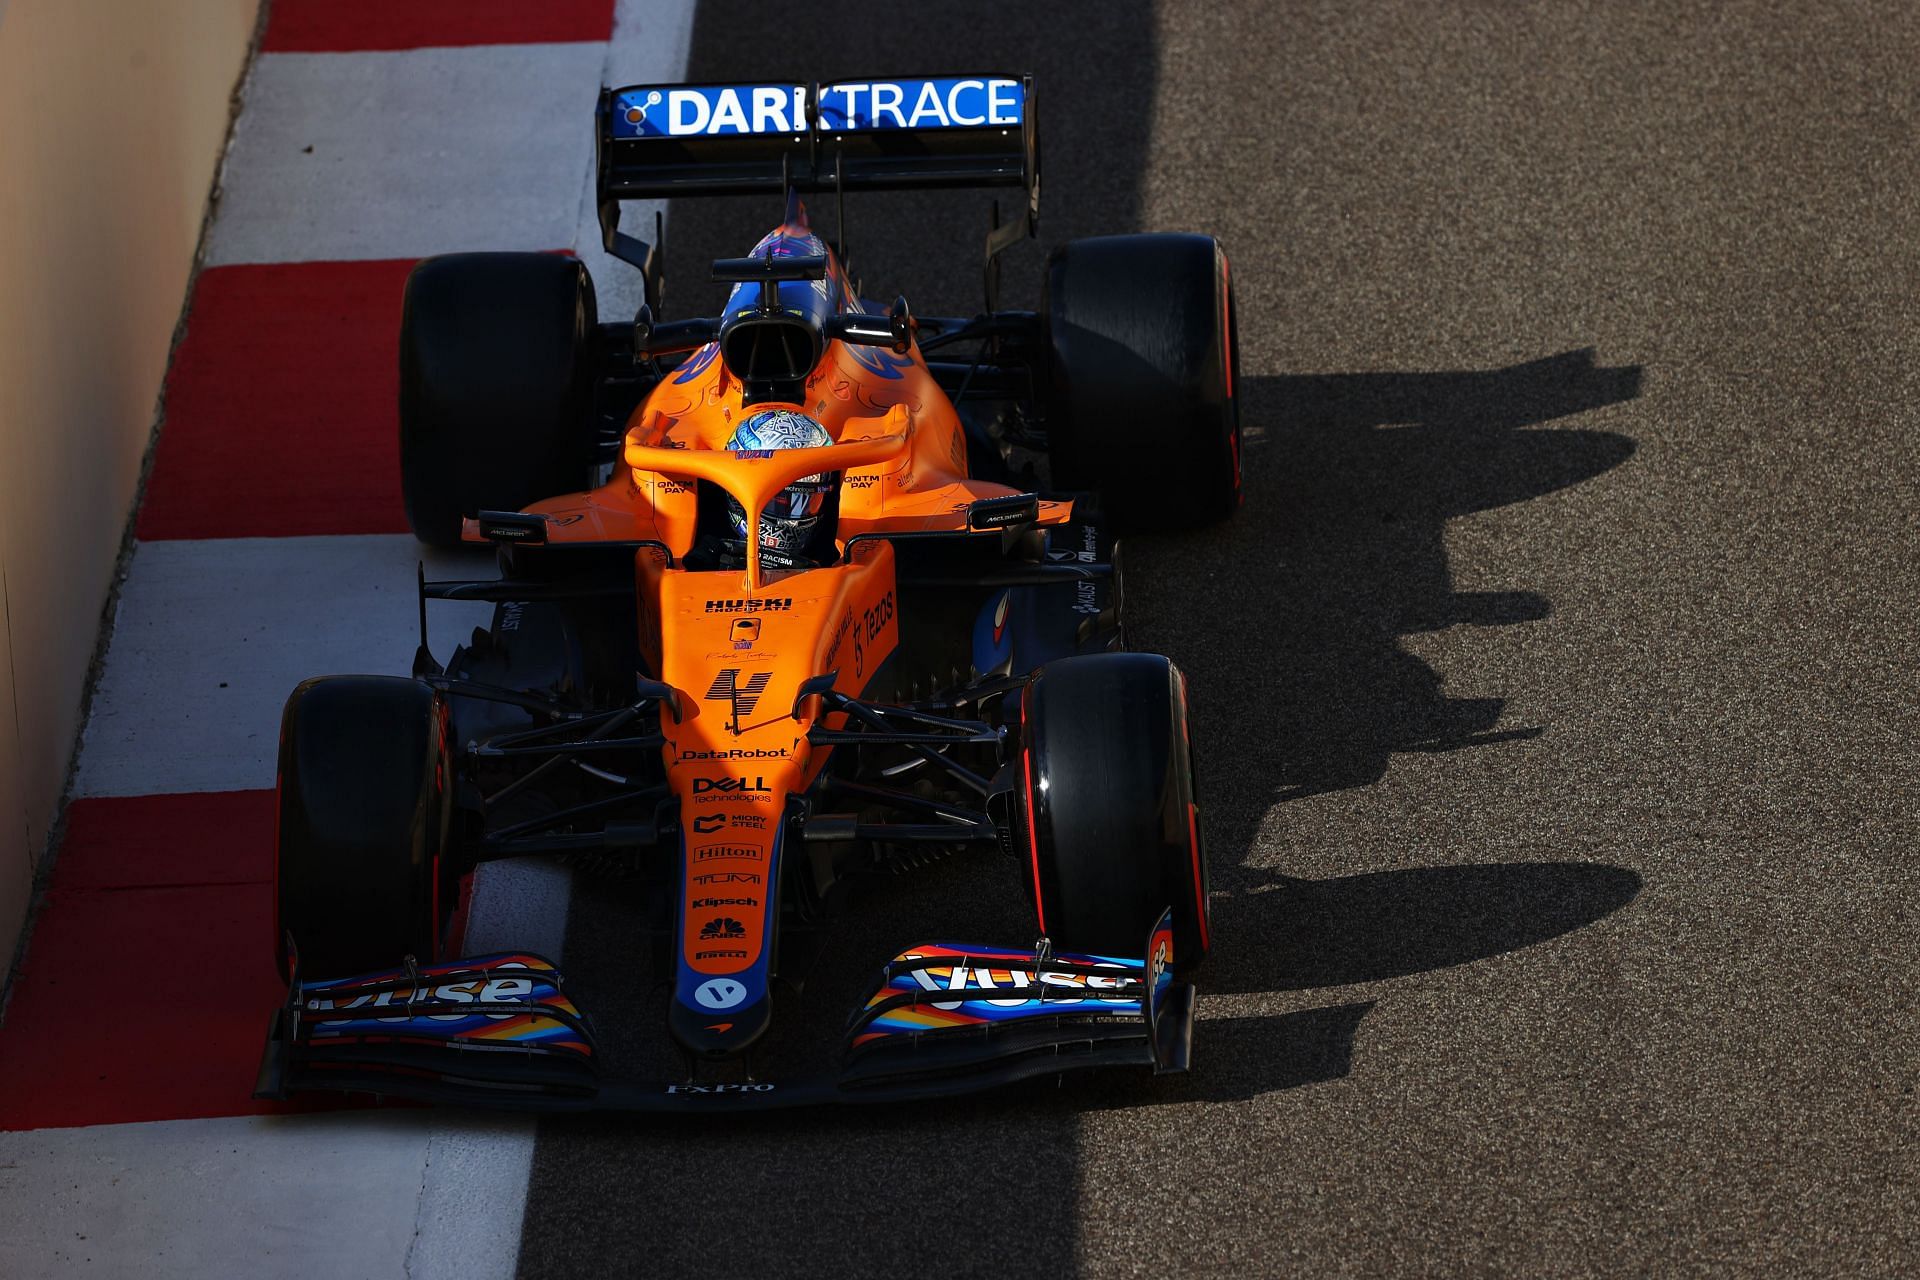 McLaren has been making strong progress in the last few seasons